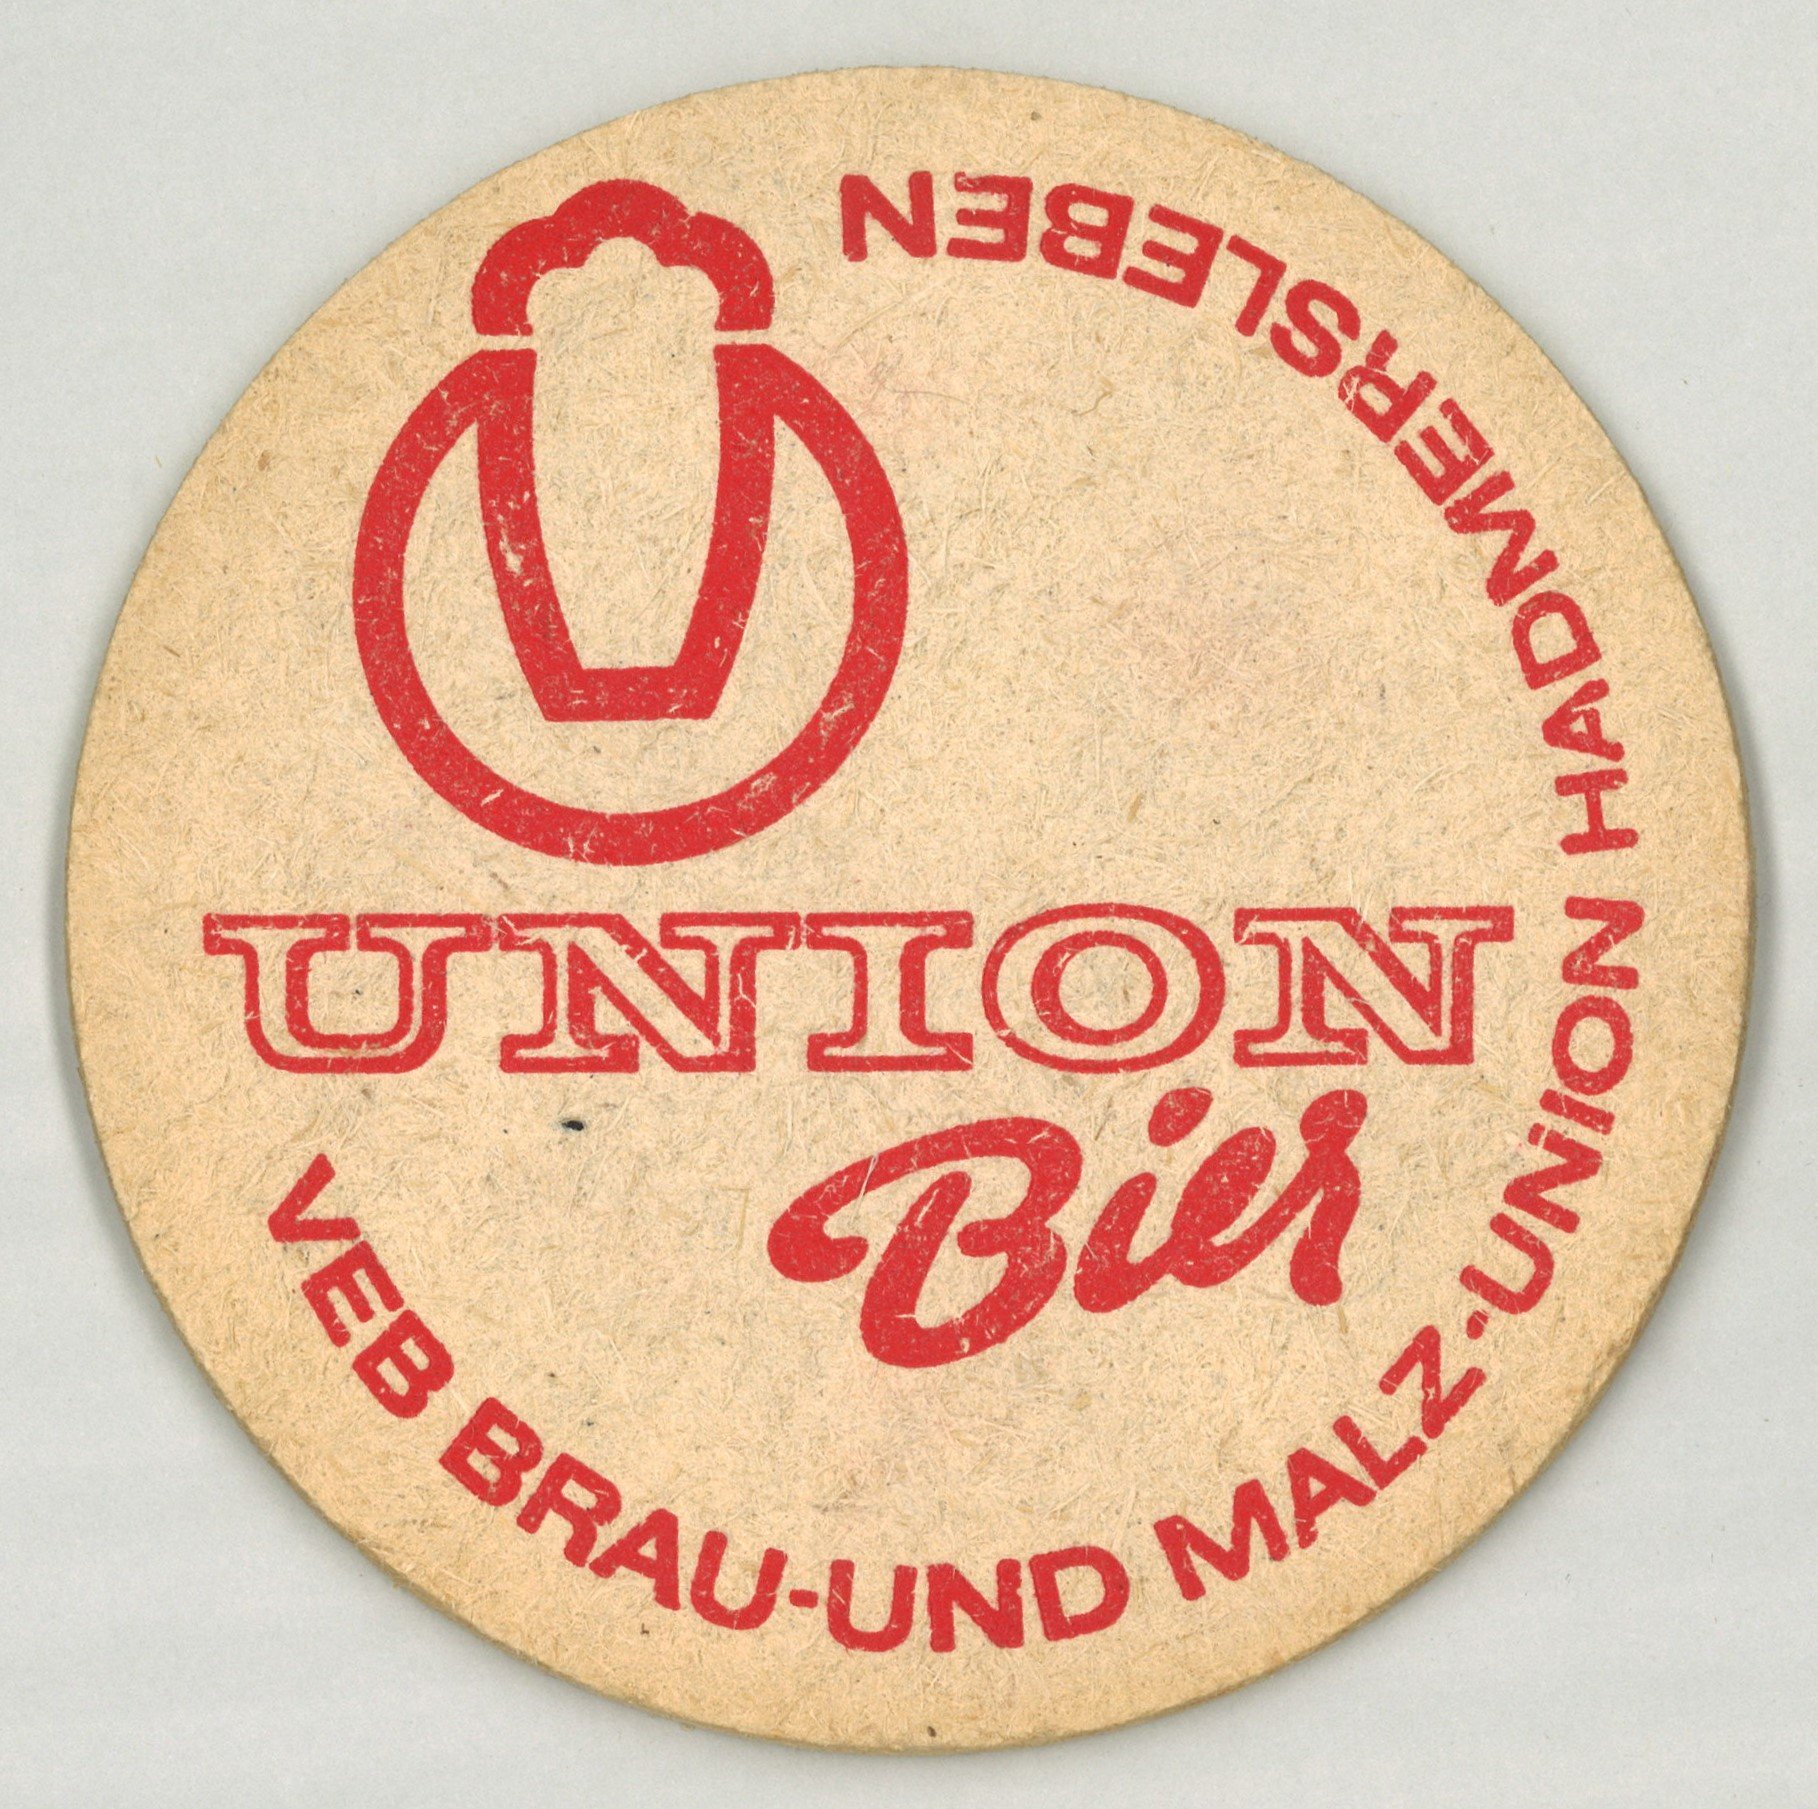 Hadmersleben: VEB Brau- und Malz-Union Hadmersleben (Landesgeschichtliche Vereinigung für die Mark Brandenburg e.V., Archiv CC BY)